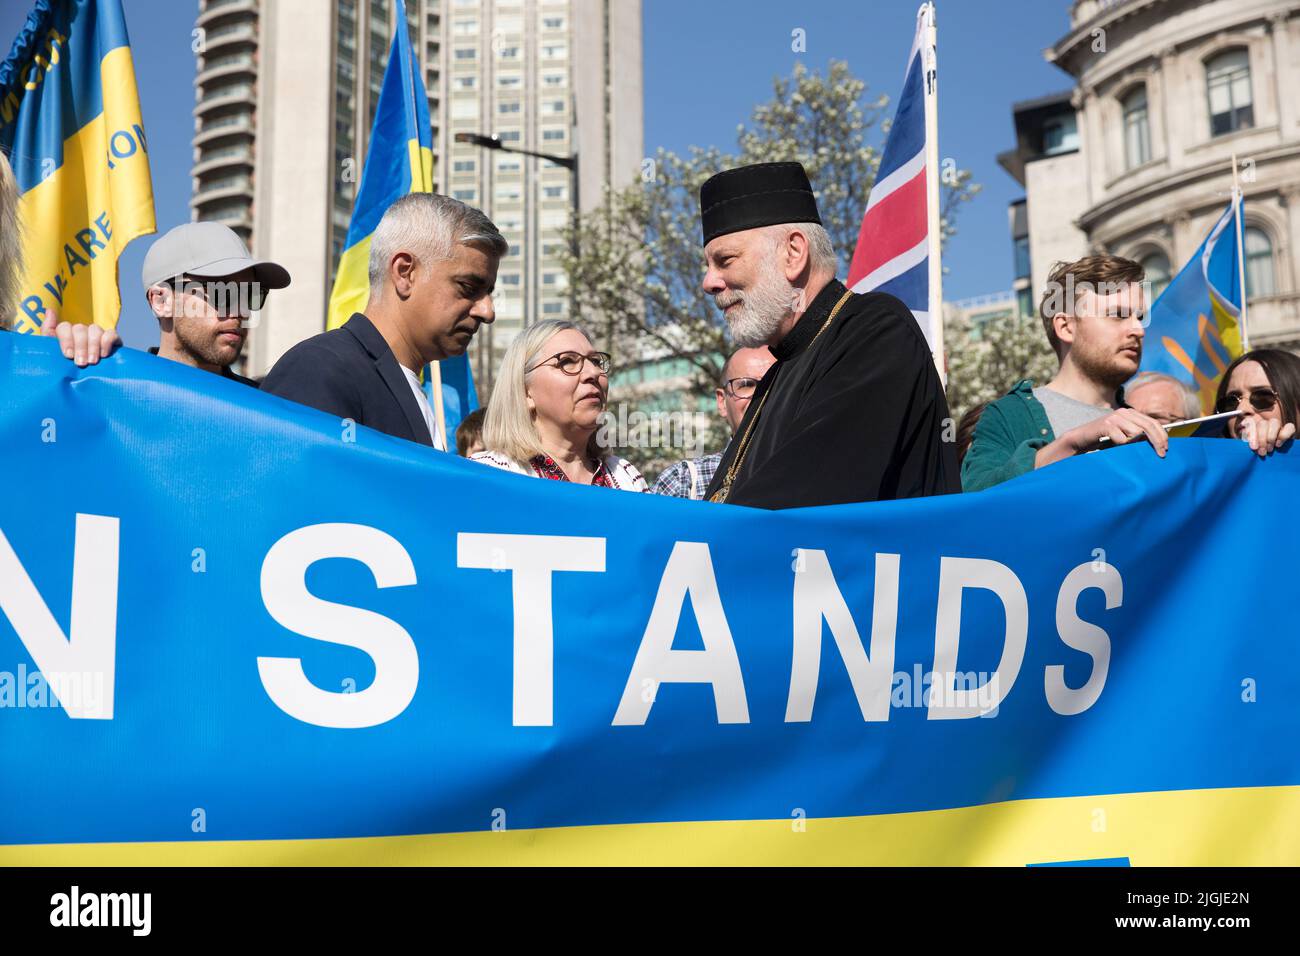 El alcalde de Londres Sadiq Khan, de centro izquierda, se ve mientras la gente se reúne durante la marcha de Londres con Ucrania. Foto de stock